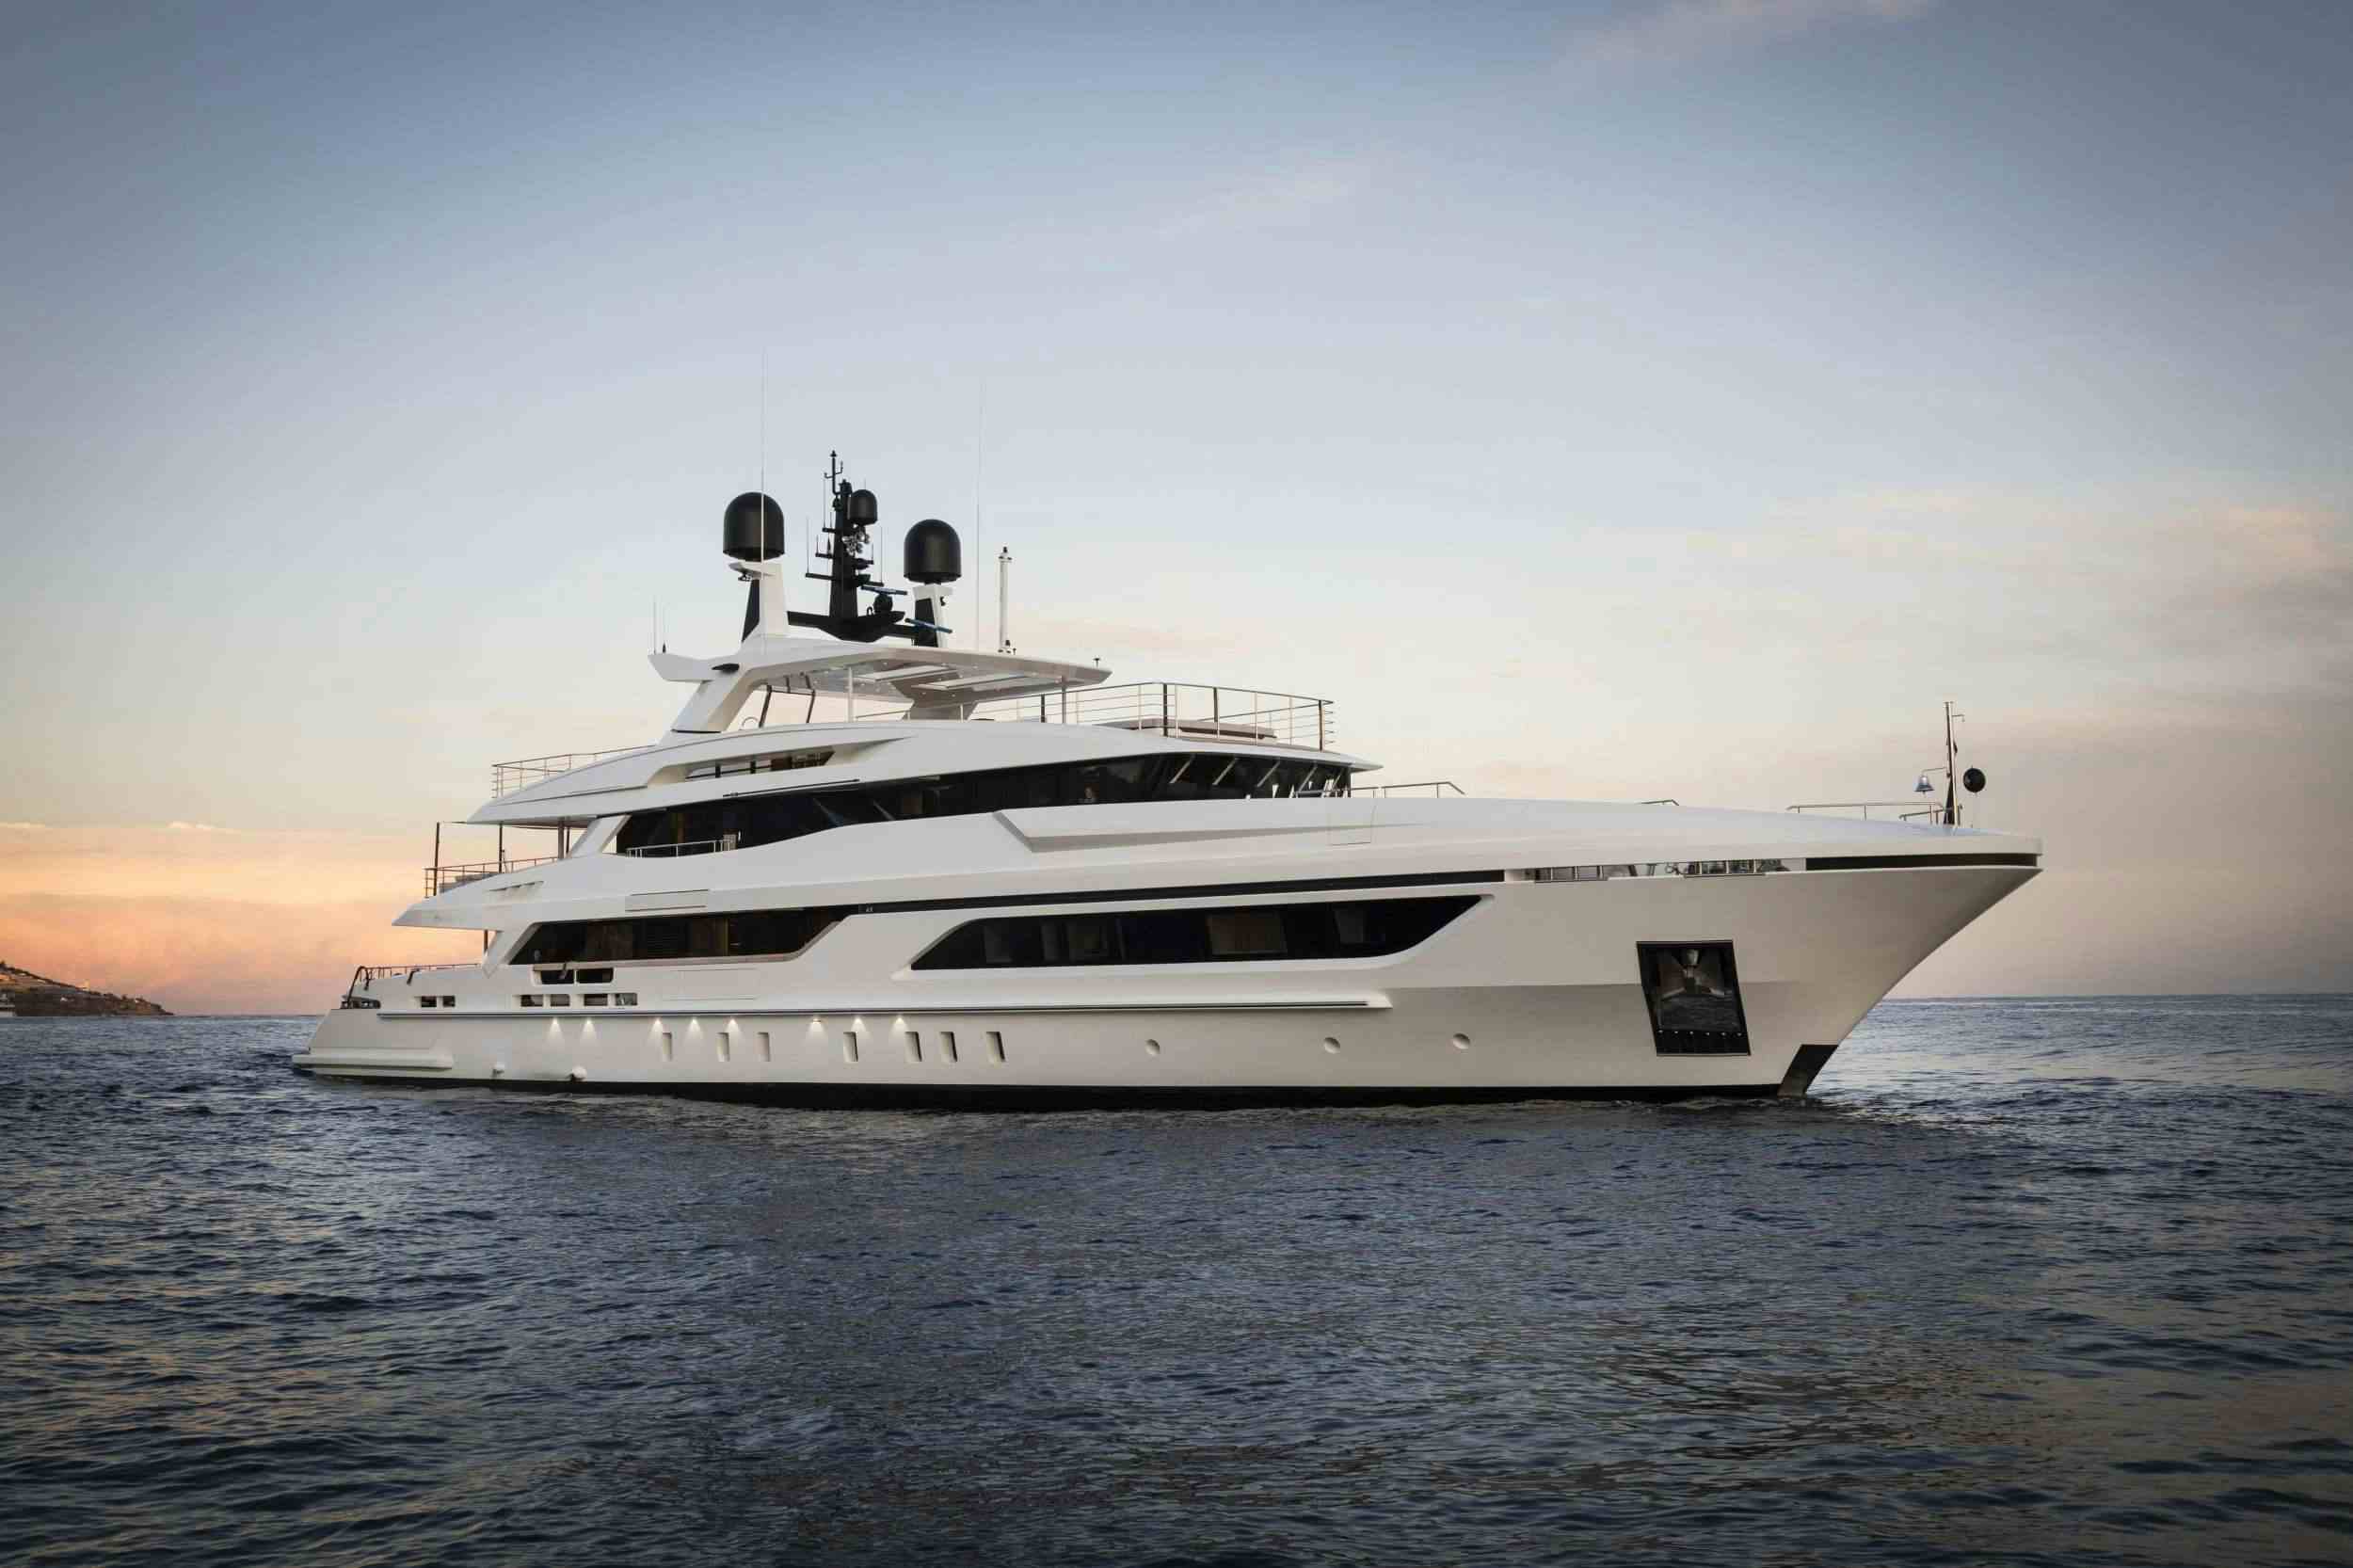 ANDIAMO - Yacht Charter Marseille & Boat hire in Fr. Riviera, Corsica & Sardinia 1